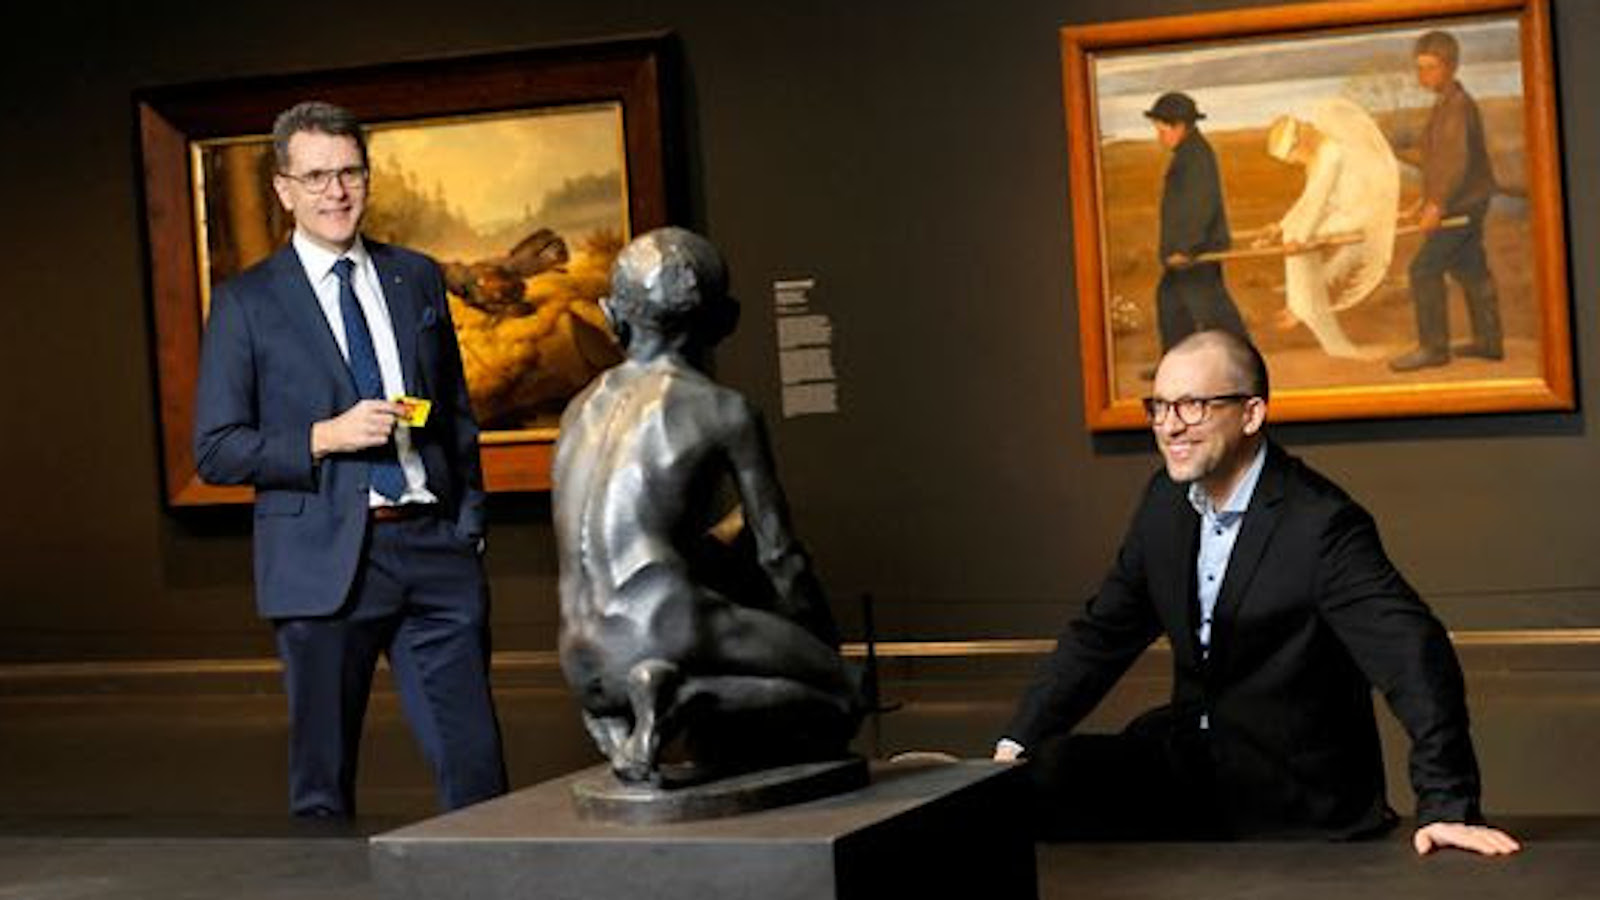 Kuvassa on ovat vasemmalla seisomassa Kimmo Levä ja oikealla pöydän takana Seppo Honkanen. Molemmat ovat tummissa puvuissa. Pöydällä on patsas, jossa ihmisfiguuri istuu ja se on väriltään musta.